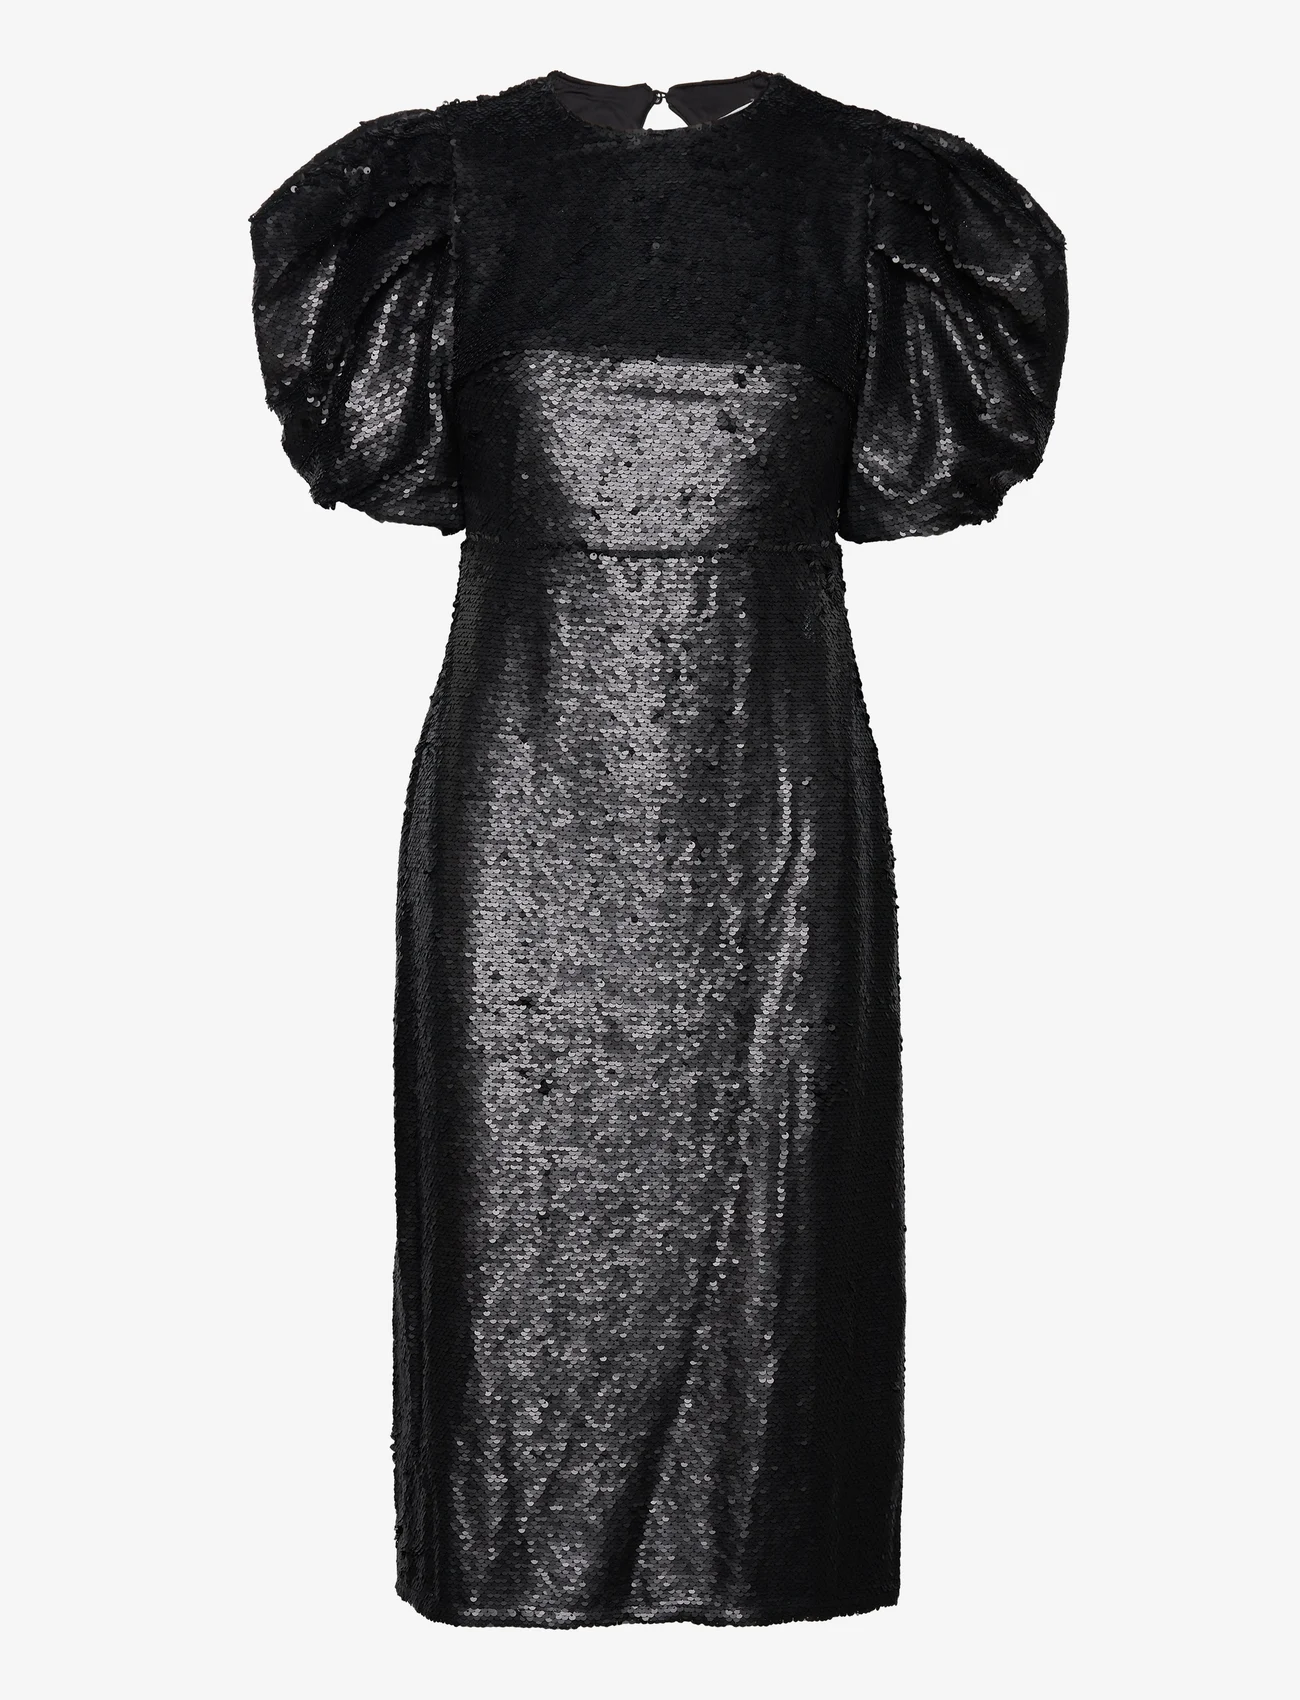 Malina - Blair Sequin Dress - feestelijke kleding voor outlet-prijzen - black - 0